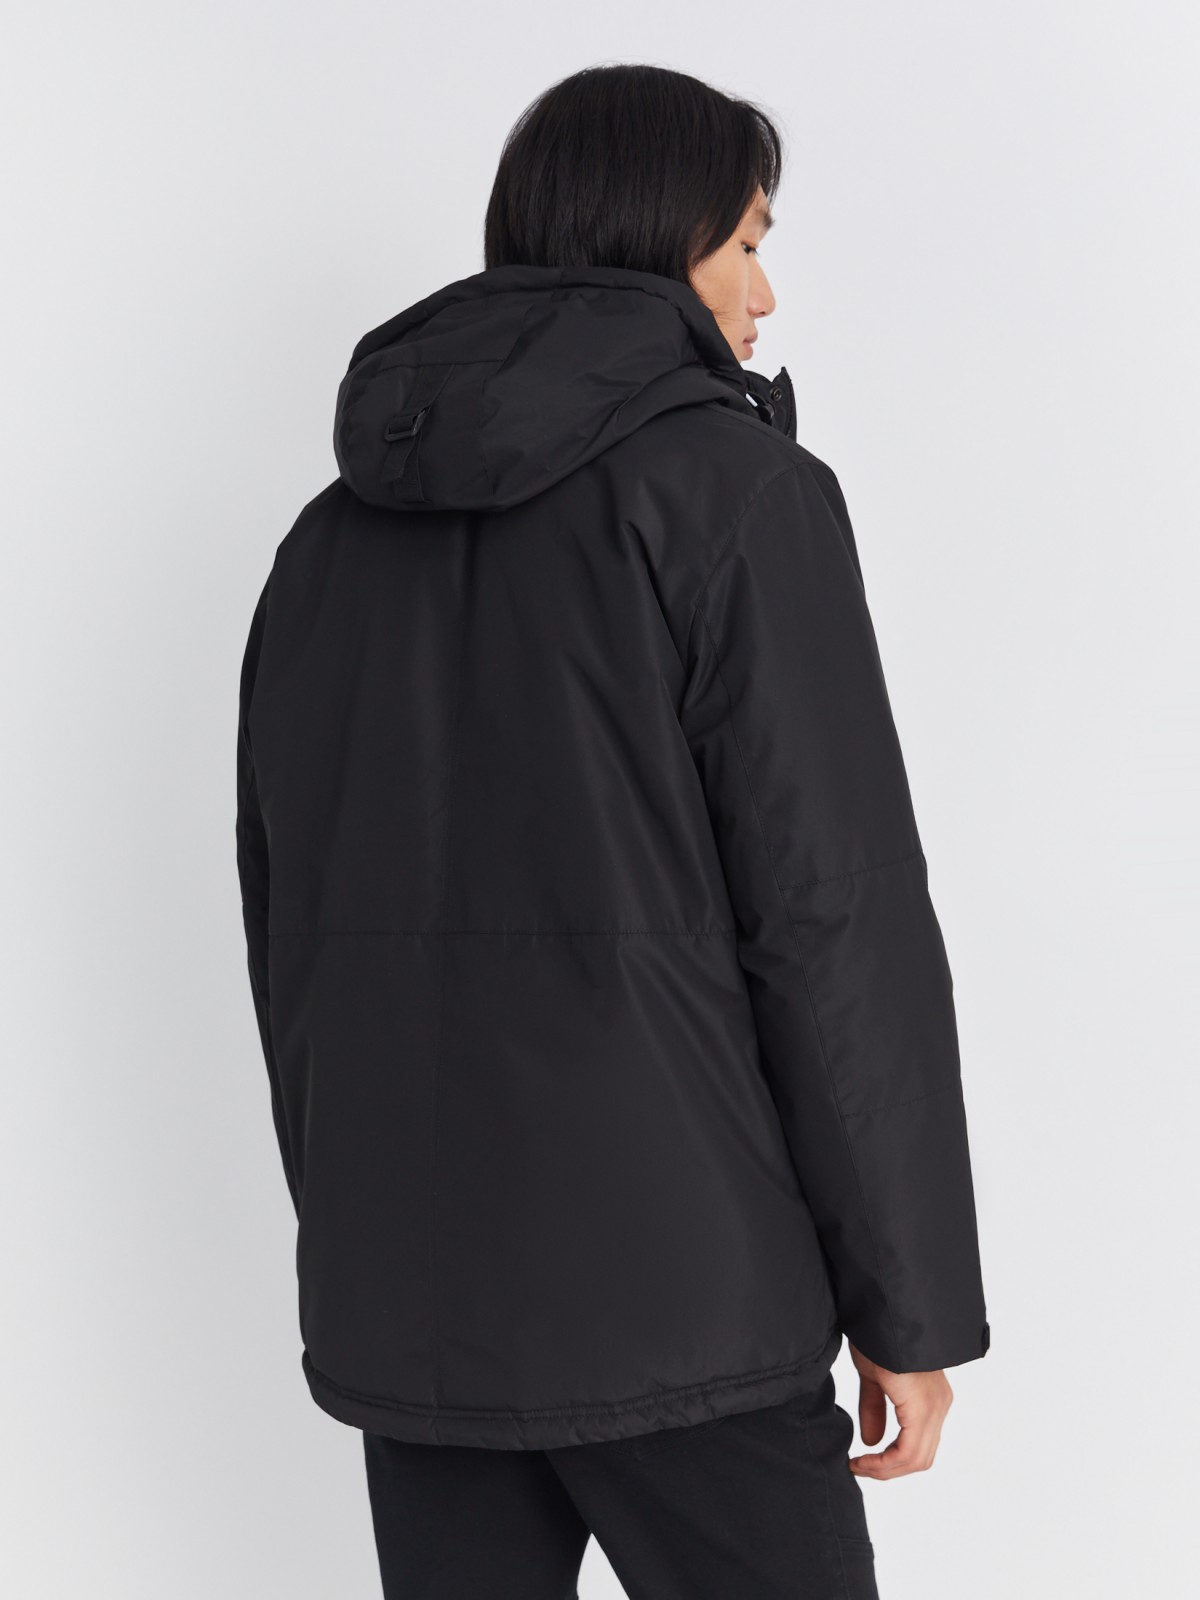 Тёплая куртка удлинённого силуэта с капюшоном на синтепоне zolla 013345102064, цвет черный, размер M - фото 6